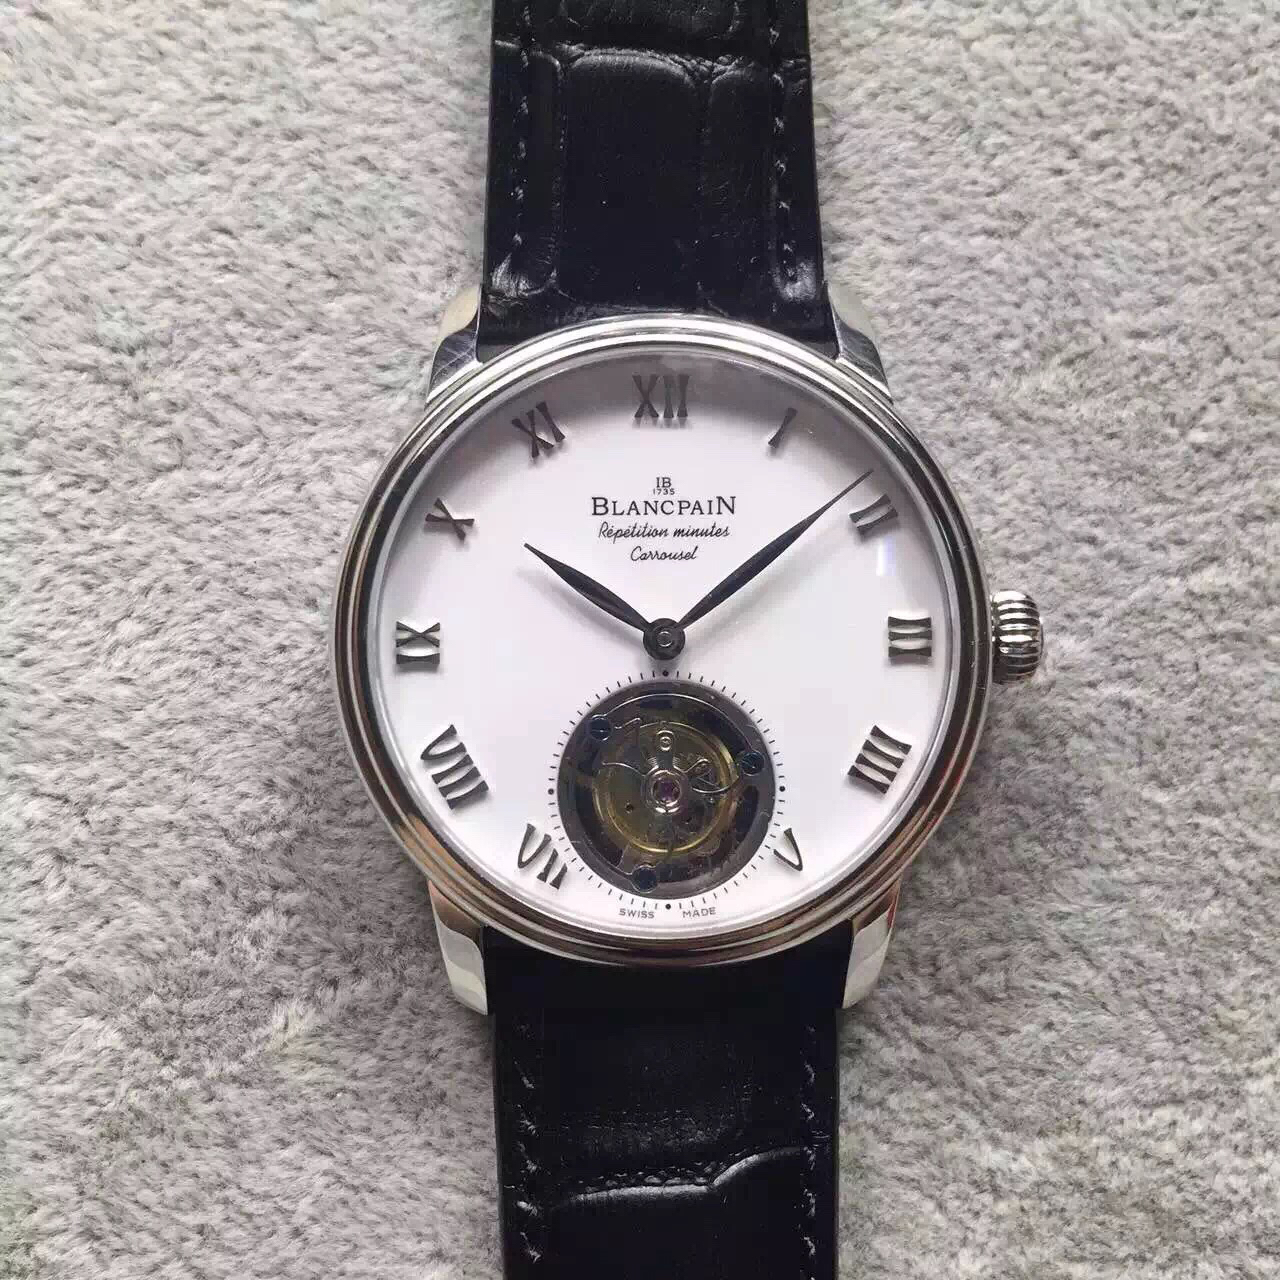 2023052702480286 - 復刻手錶寶珀手錶在哪買 LH寶珀佈拉蘇斯陀飛輪￥5880